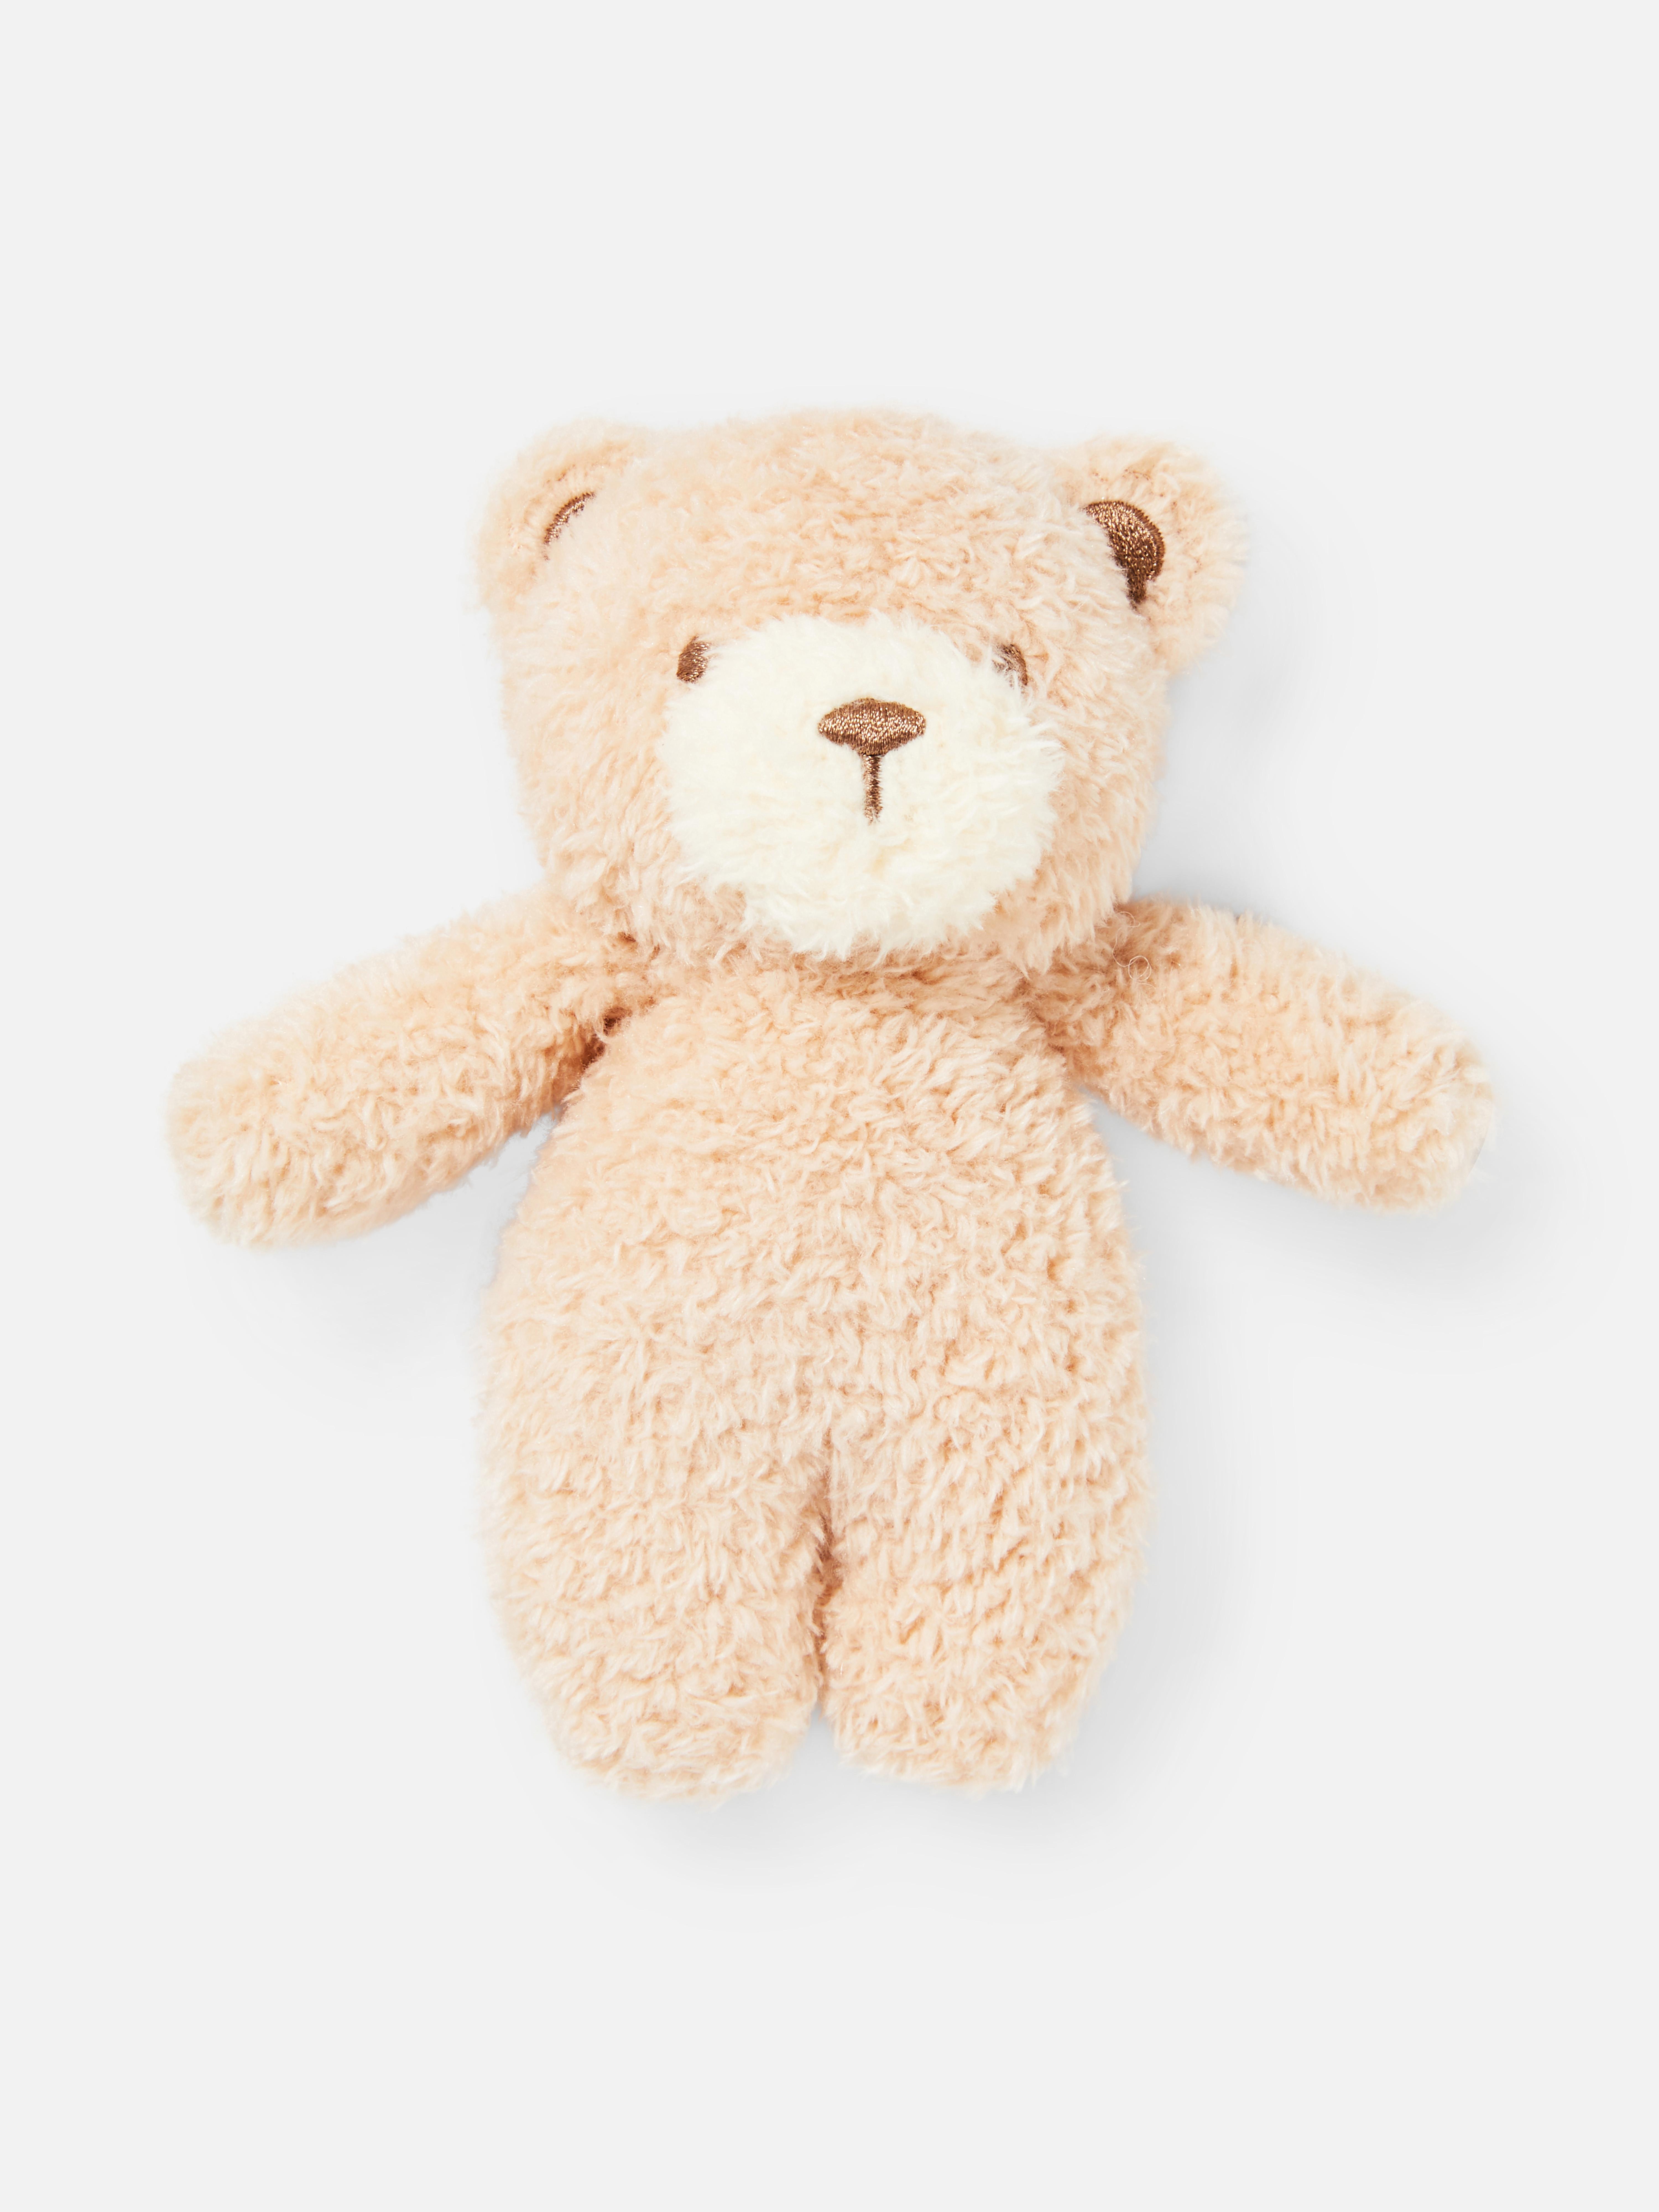 Small Teddy Bear Toy